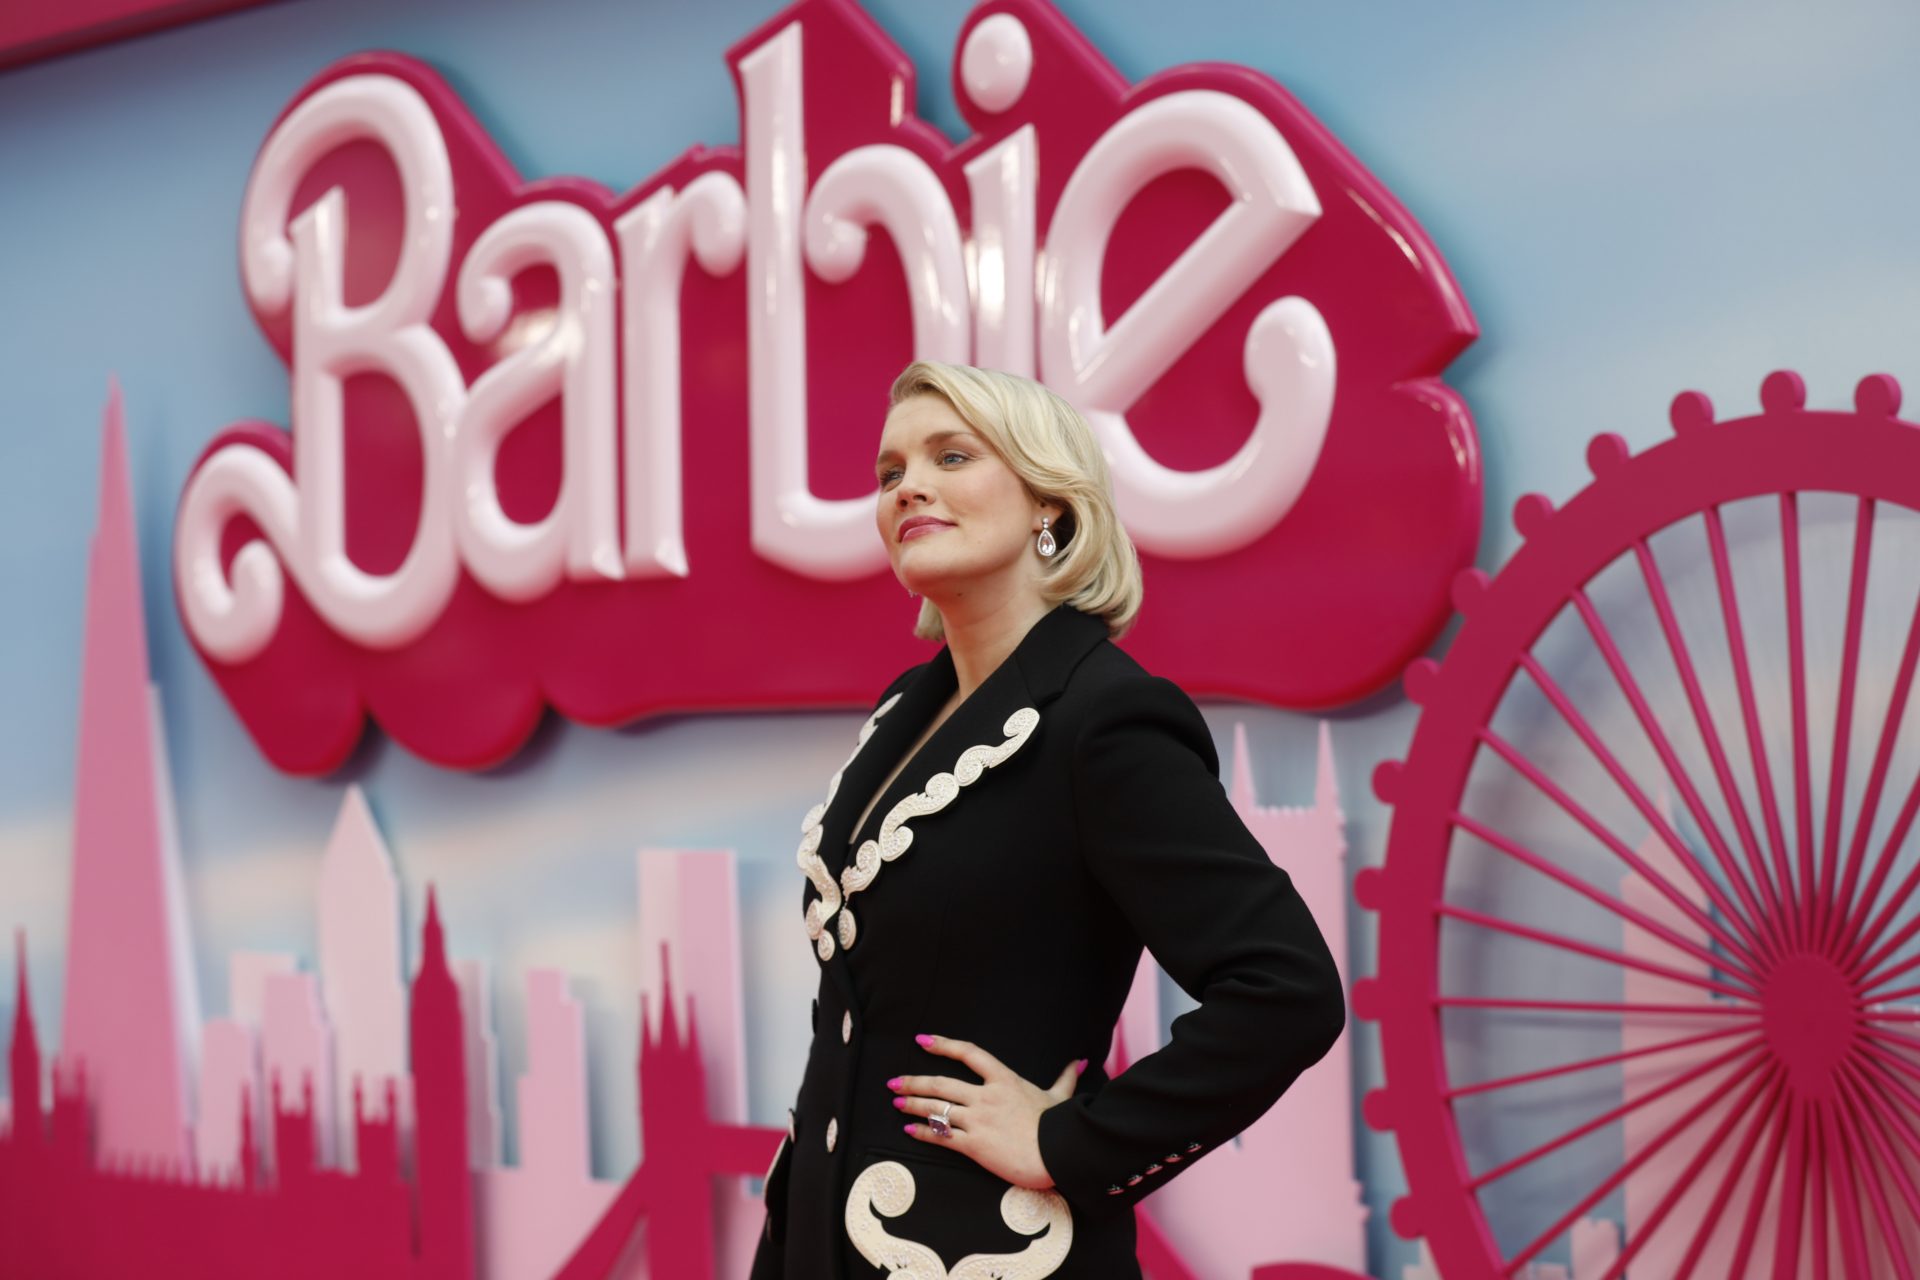 She's Midge in 'Barbie': spotlight on Oscar-winner Emerald Fennell